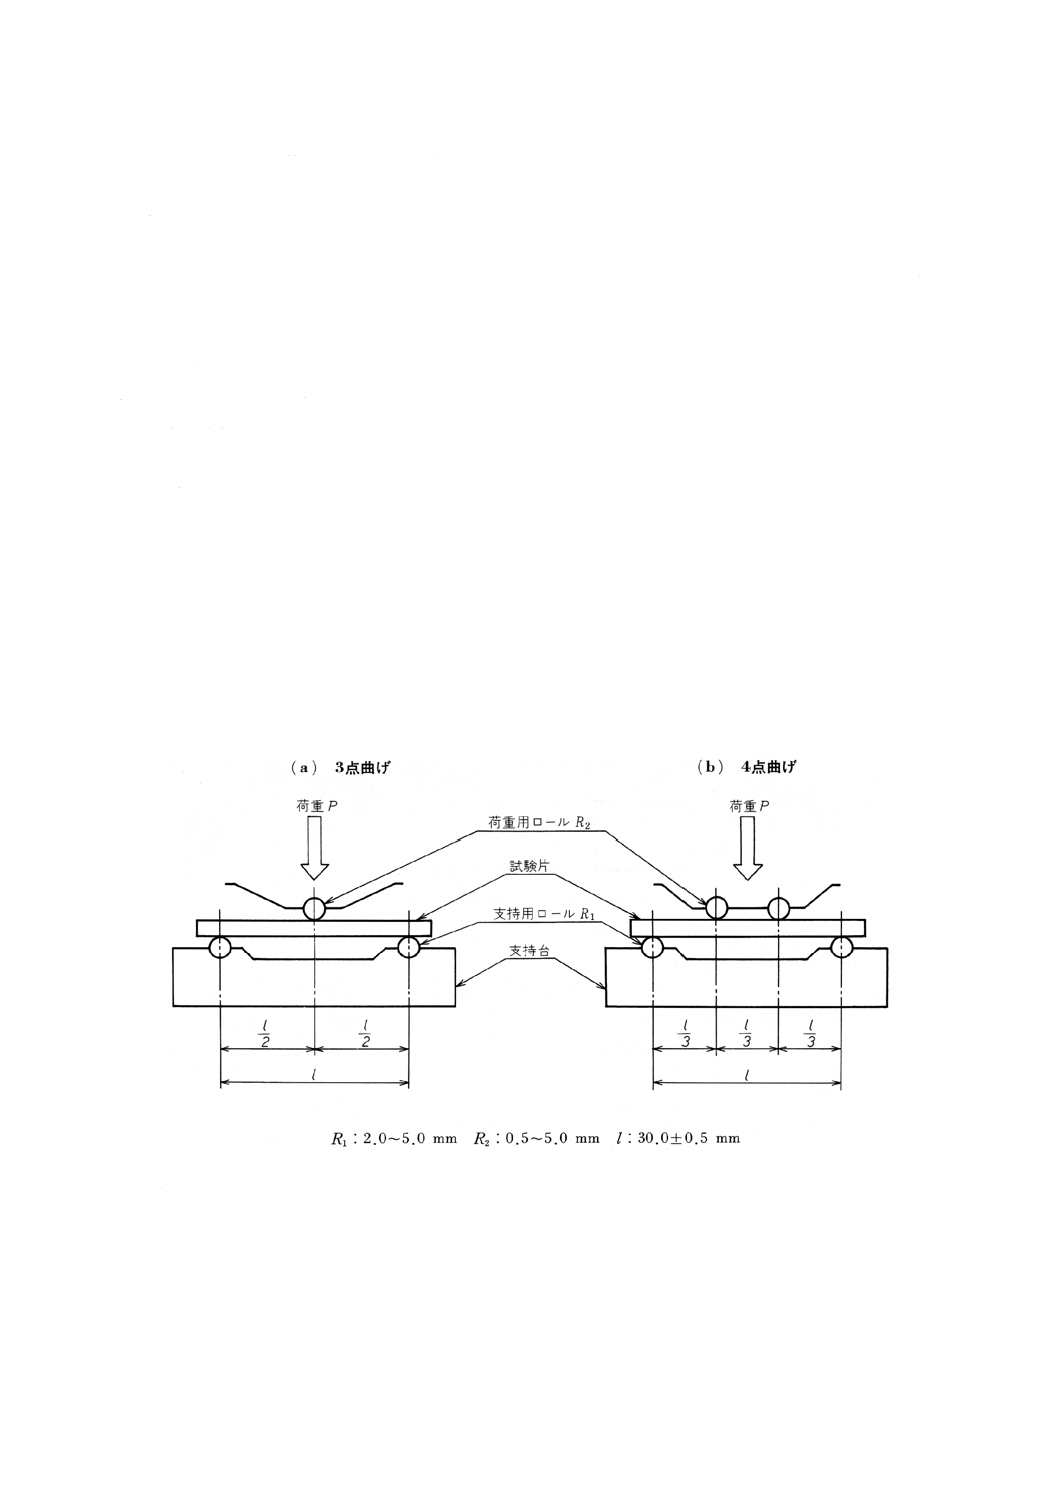 JISC2141:1992 電気絶縁用セラミック材料試験方法